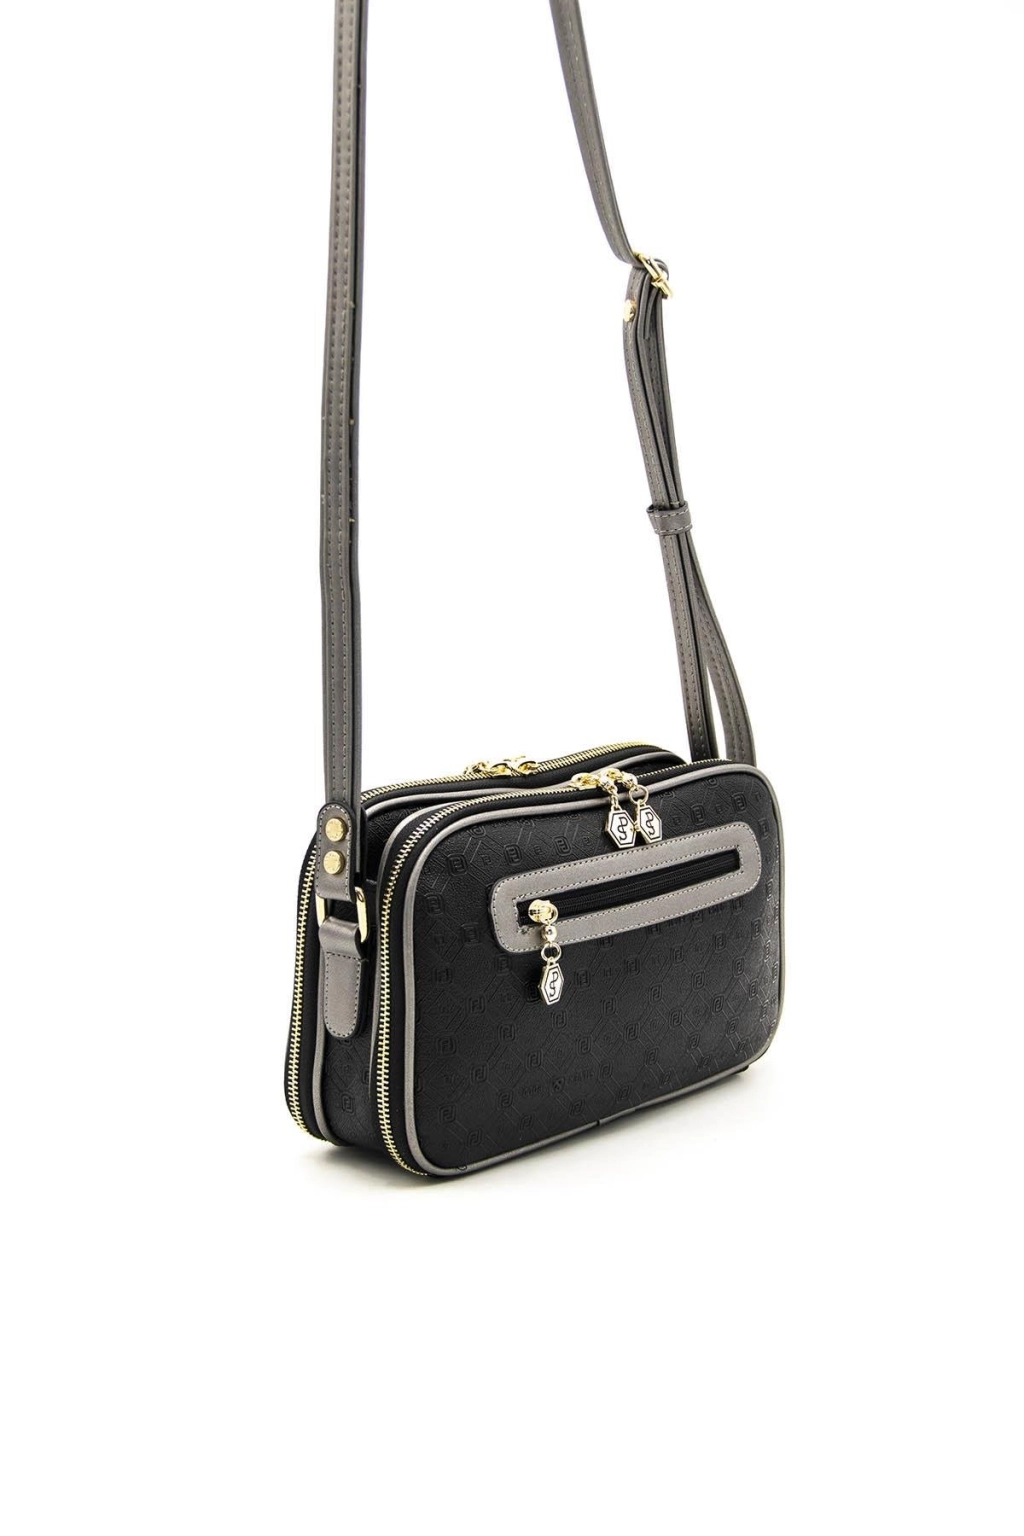 Правоъгълна дамска чанта в цвят черно с платин на SILVER&POLO